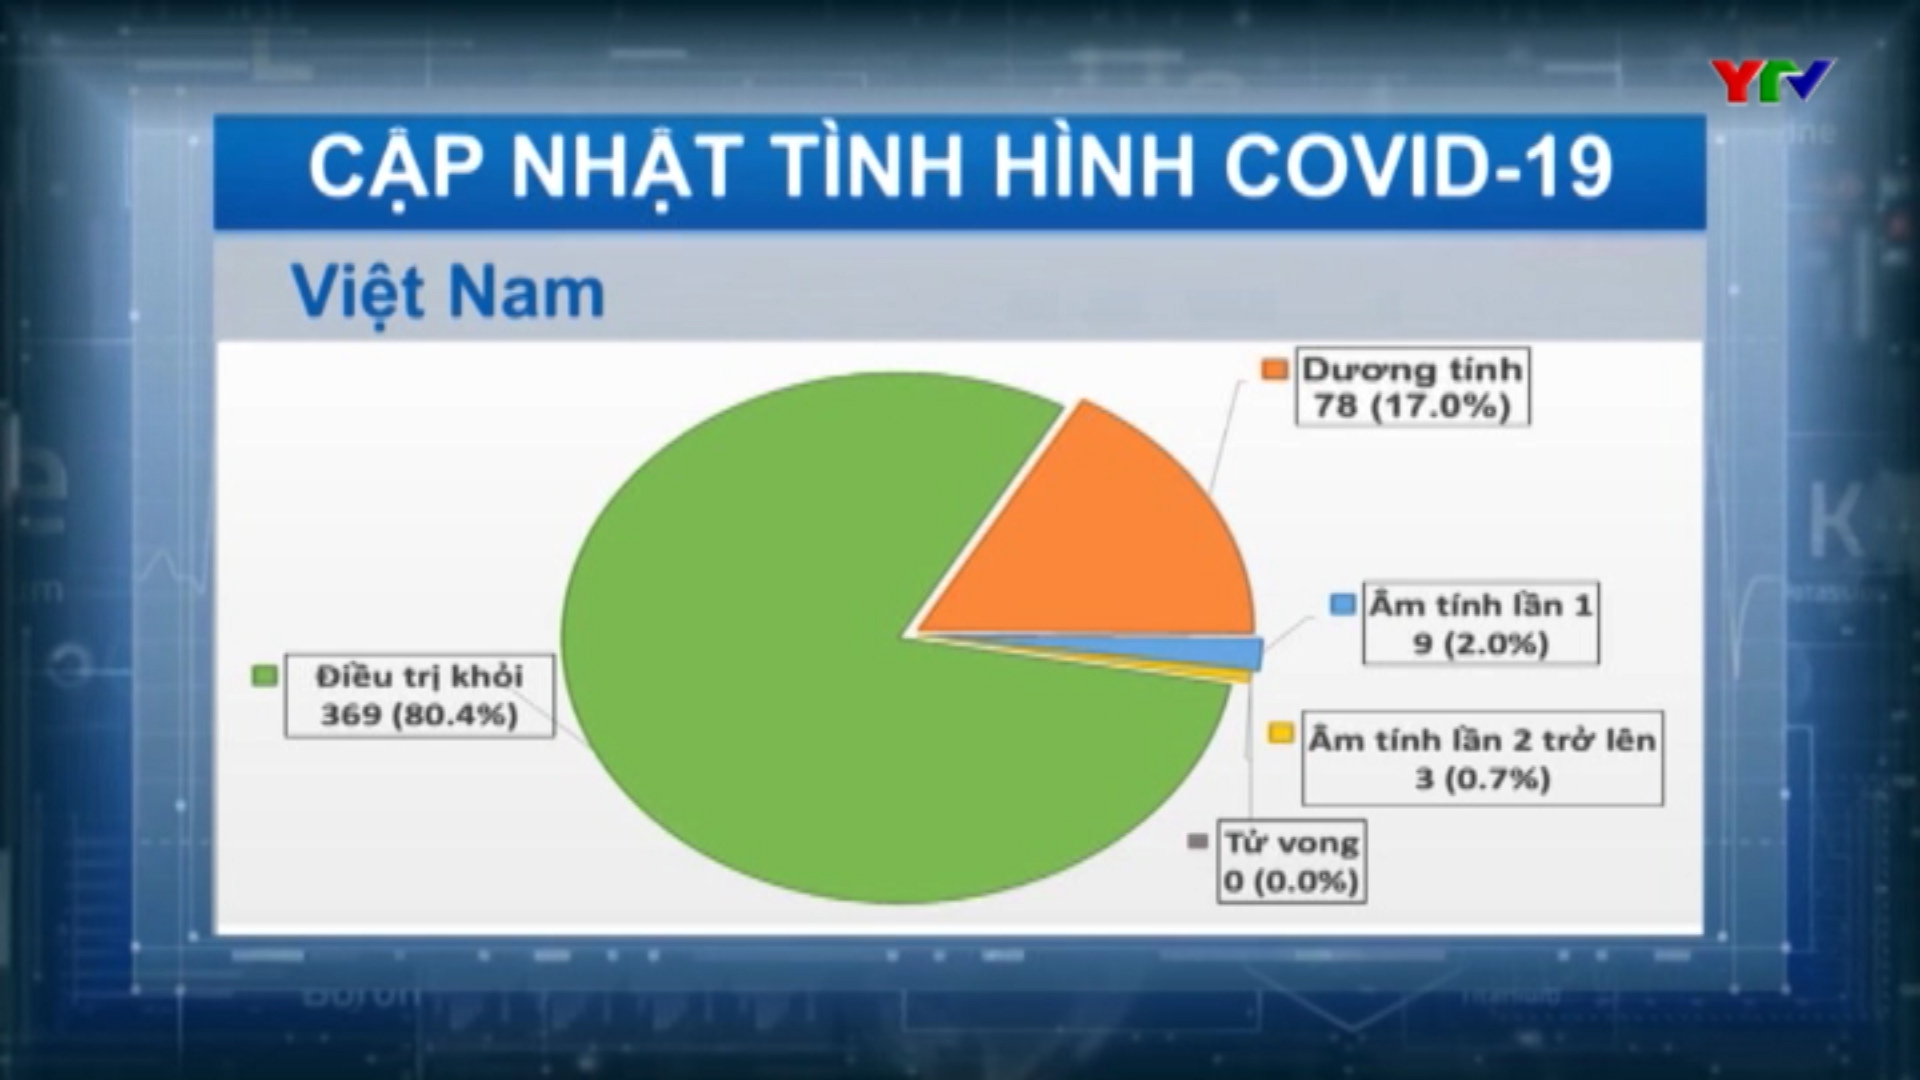 Việt Nam ghi nhận thêm 9 ca nhiễm mới COVID - 19